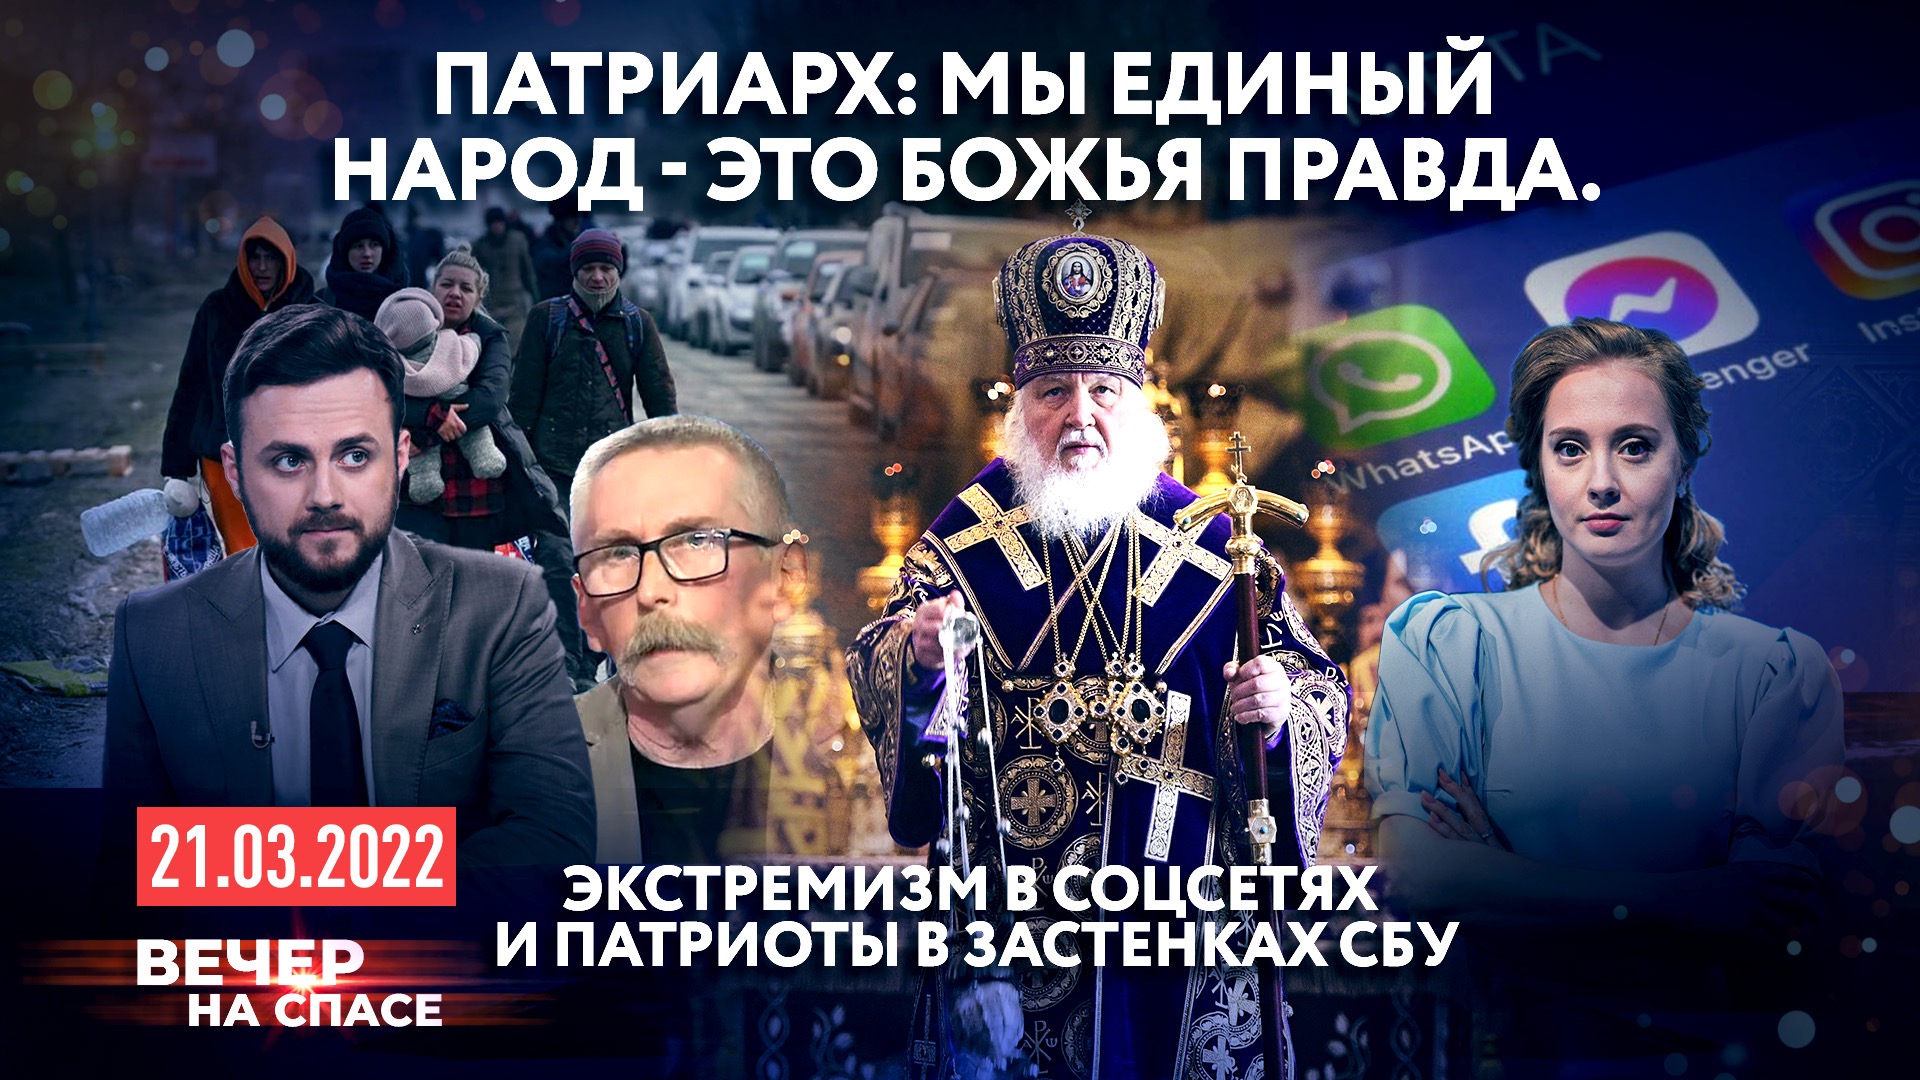 Правда экстремизм. 5 Главных патриархов. Корреспондент Навальный Live.